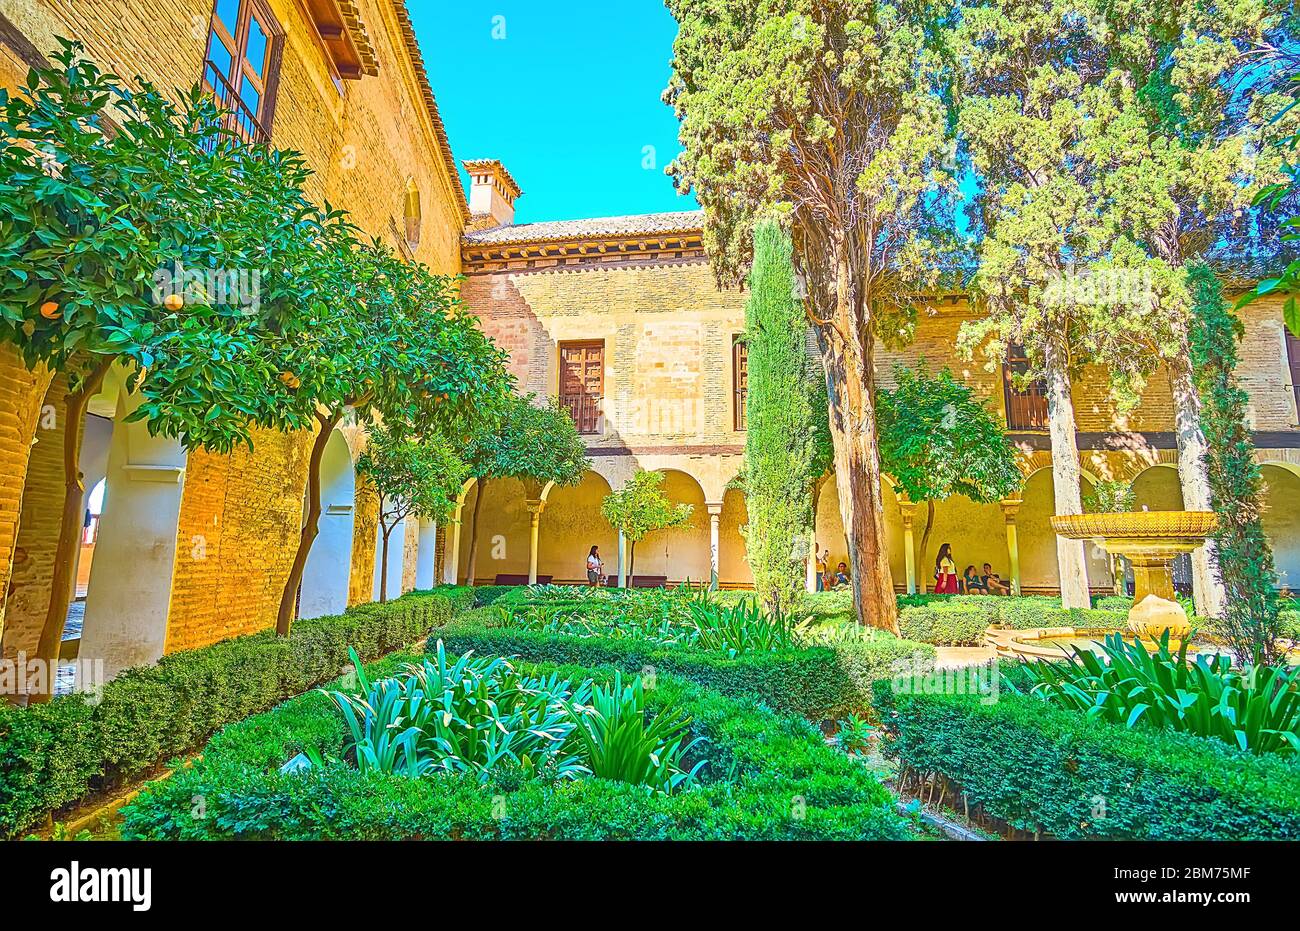 GRANADA, SPAGNA - 25 SETTEMBRE 2019: Passeggiata nel giardino ornamentale di Daraxa del Palazzo Nasrid in Alhambra e godere degli alberi di arancio, cespugli topiari e v Foto Stock